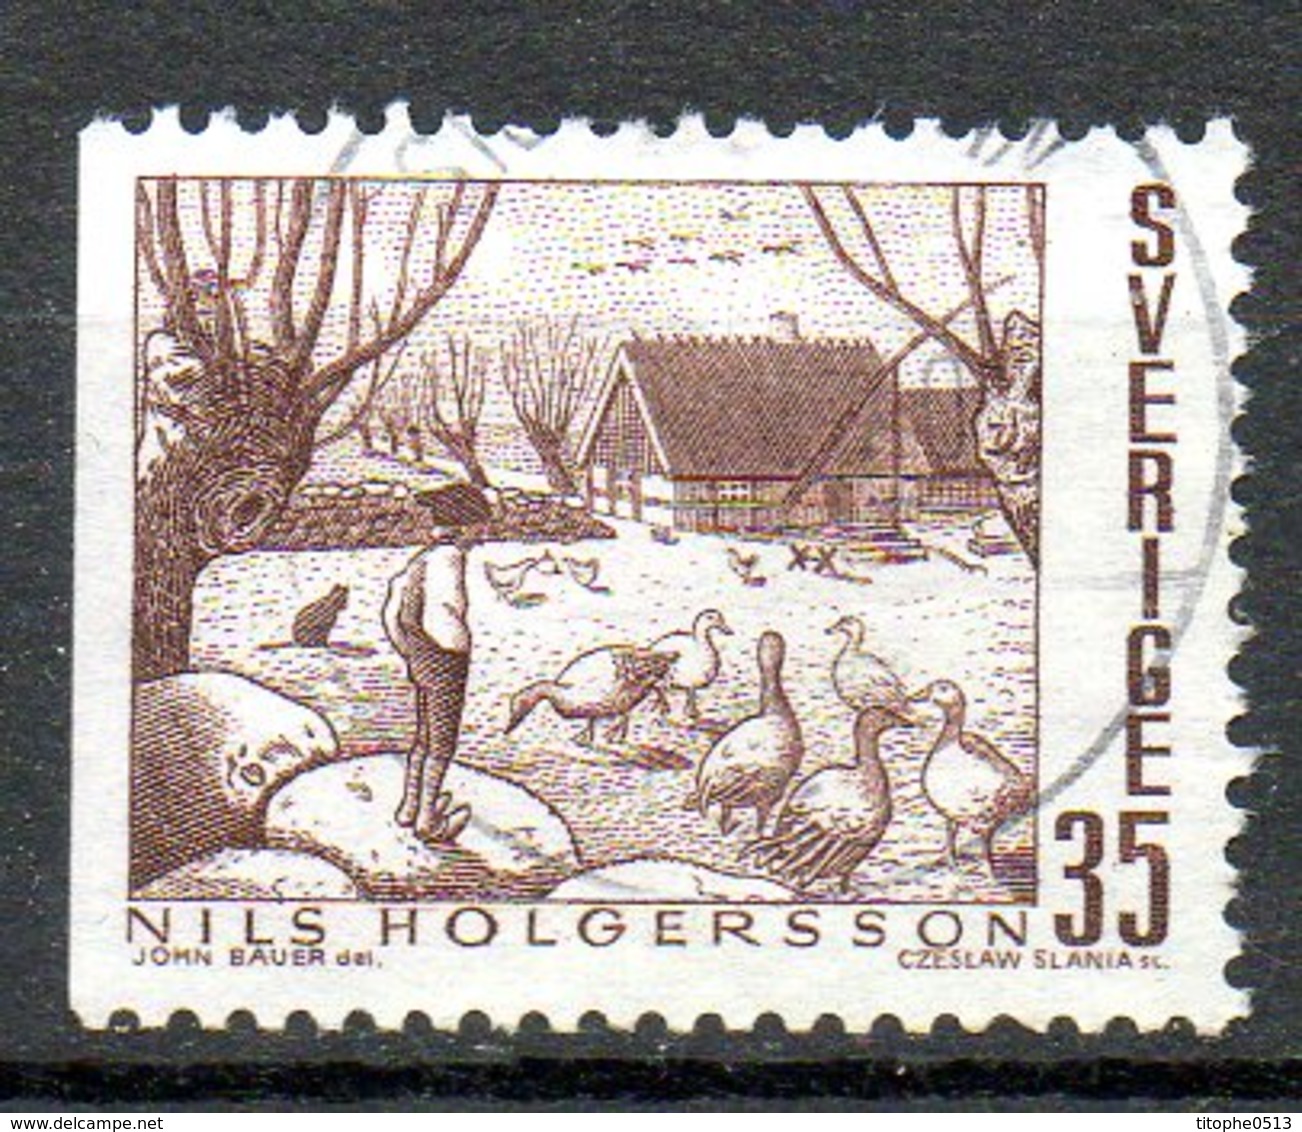 SUEDE. N°637 Oblitéré De 1969. Conte/Nils Holgersson. - Fairy Tales, Popular Stories & Legends